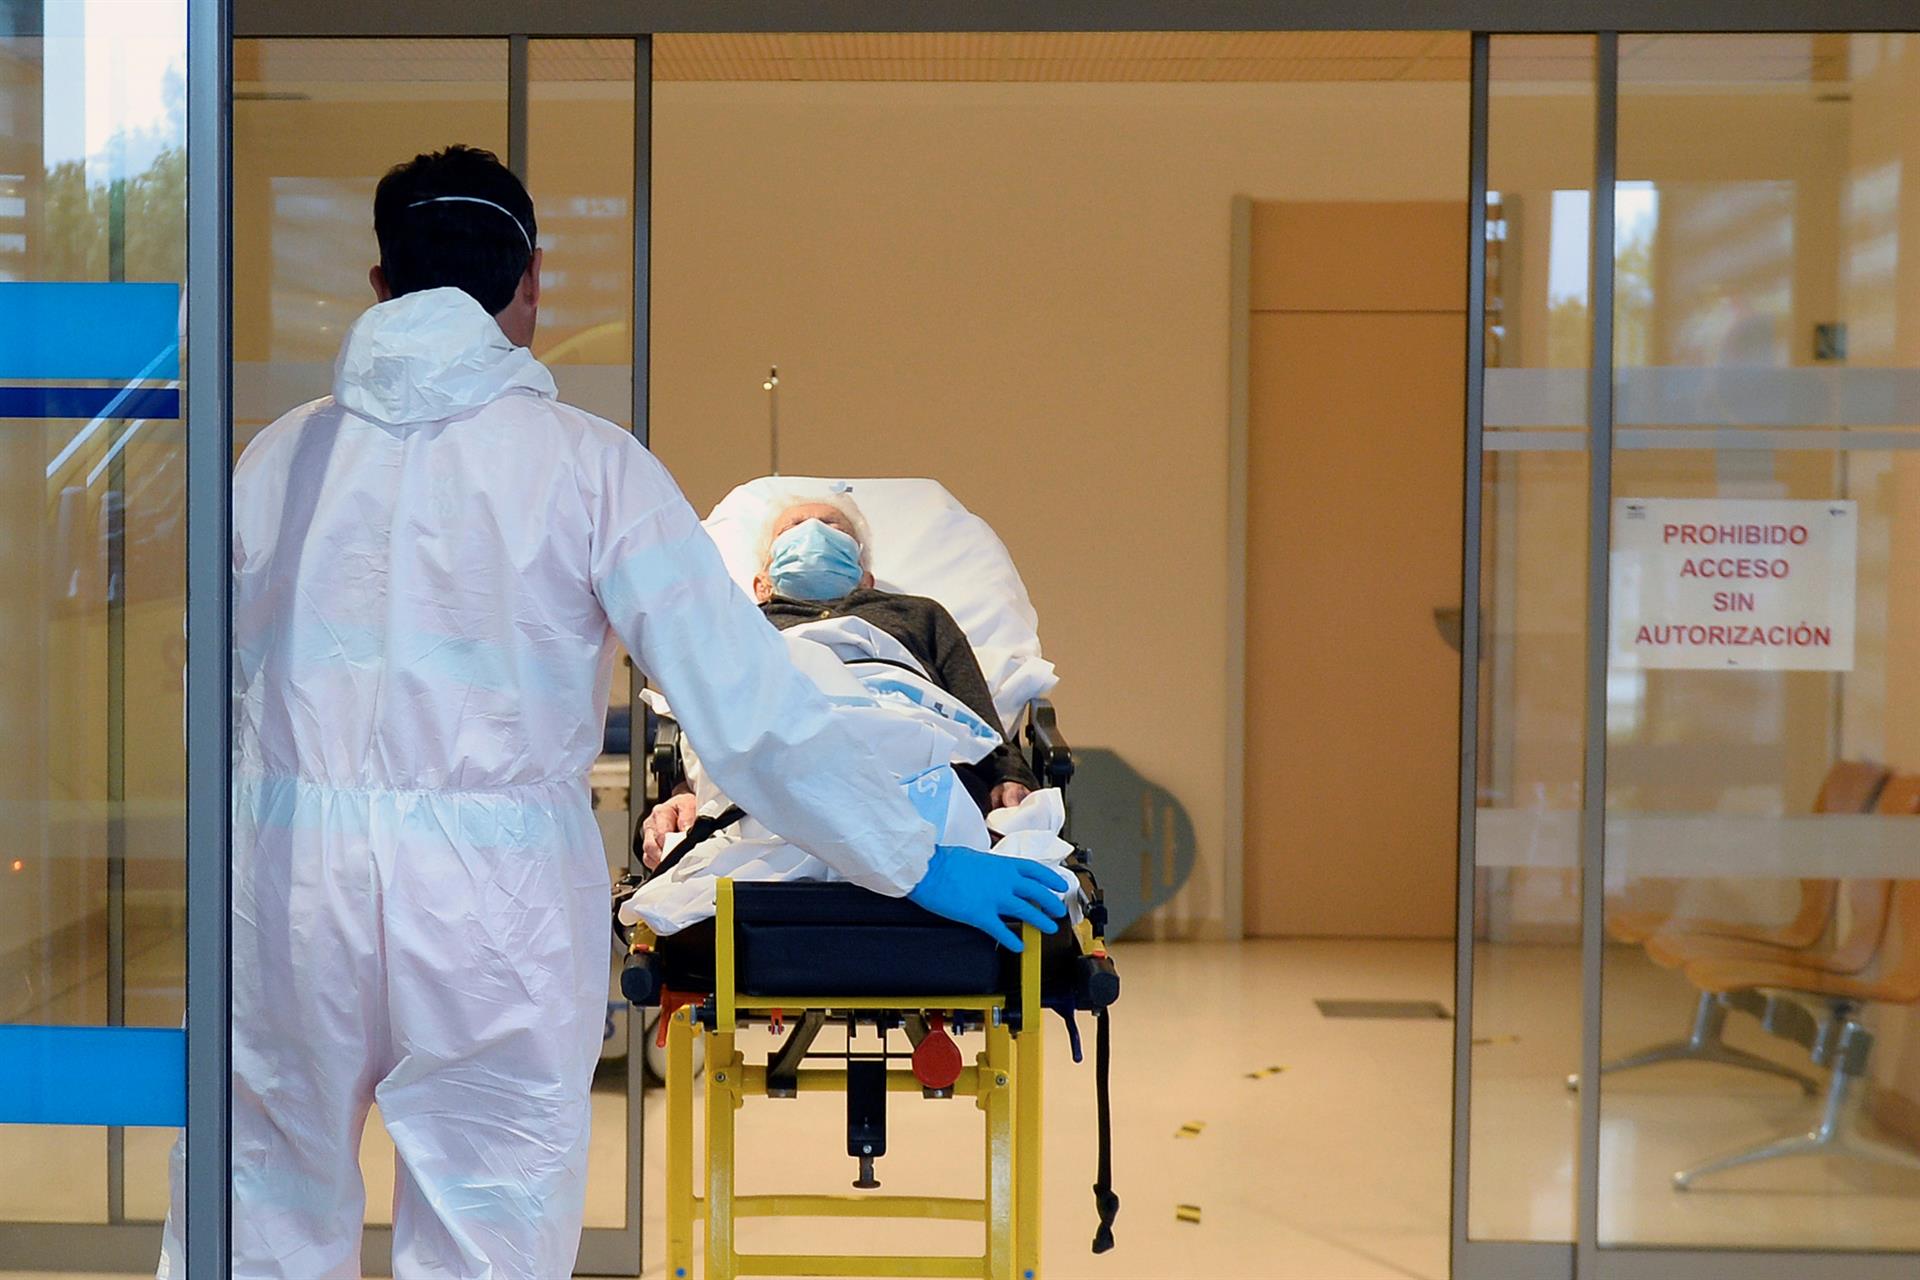 Imagen de archivo de paciente llega a las urgencias respiratorias, zona covid-19, del Hospital Río Hortega de Valladolid. EFE/Nacho Gallego